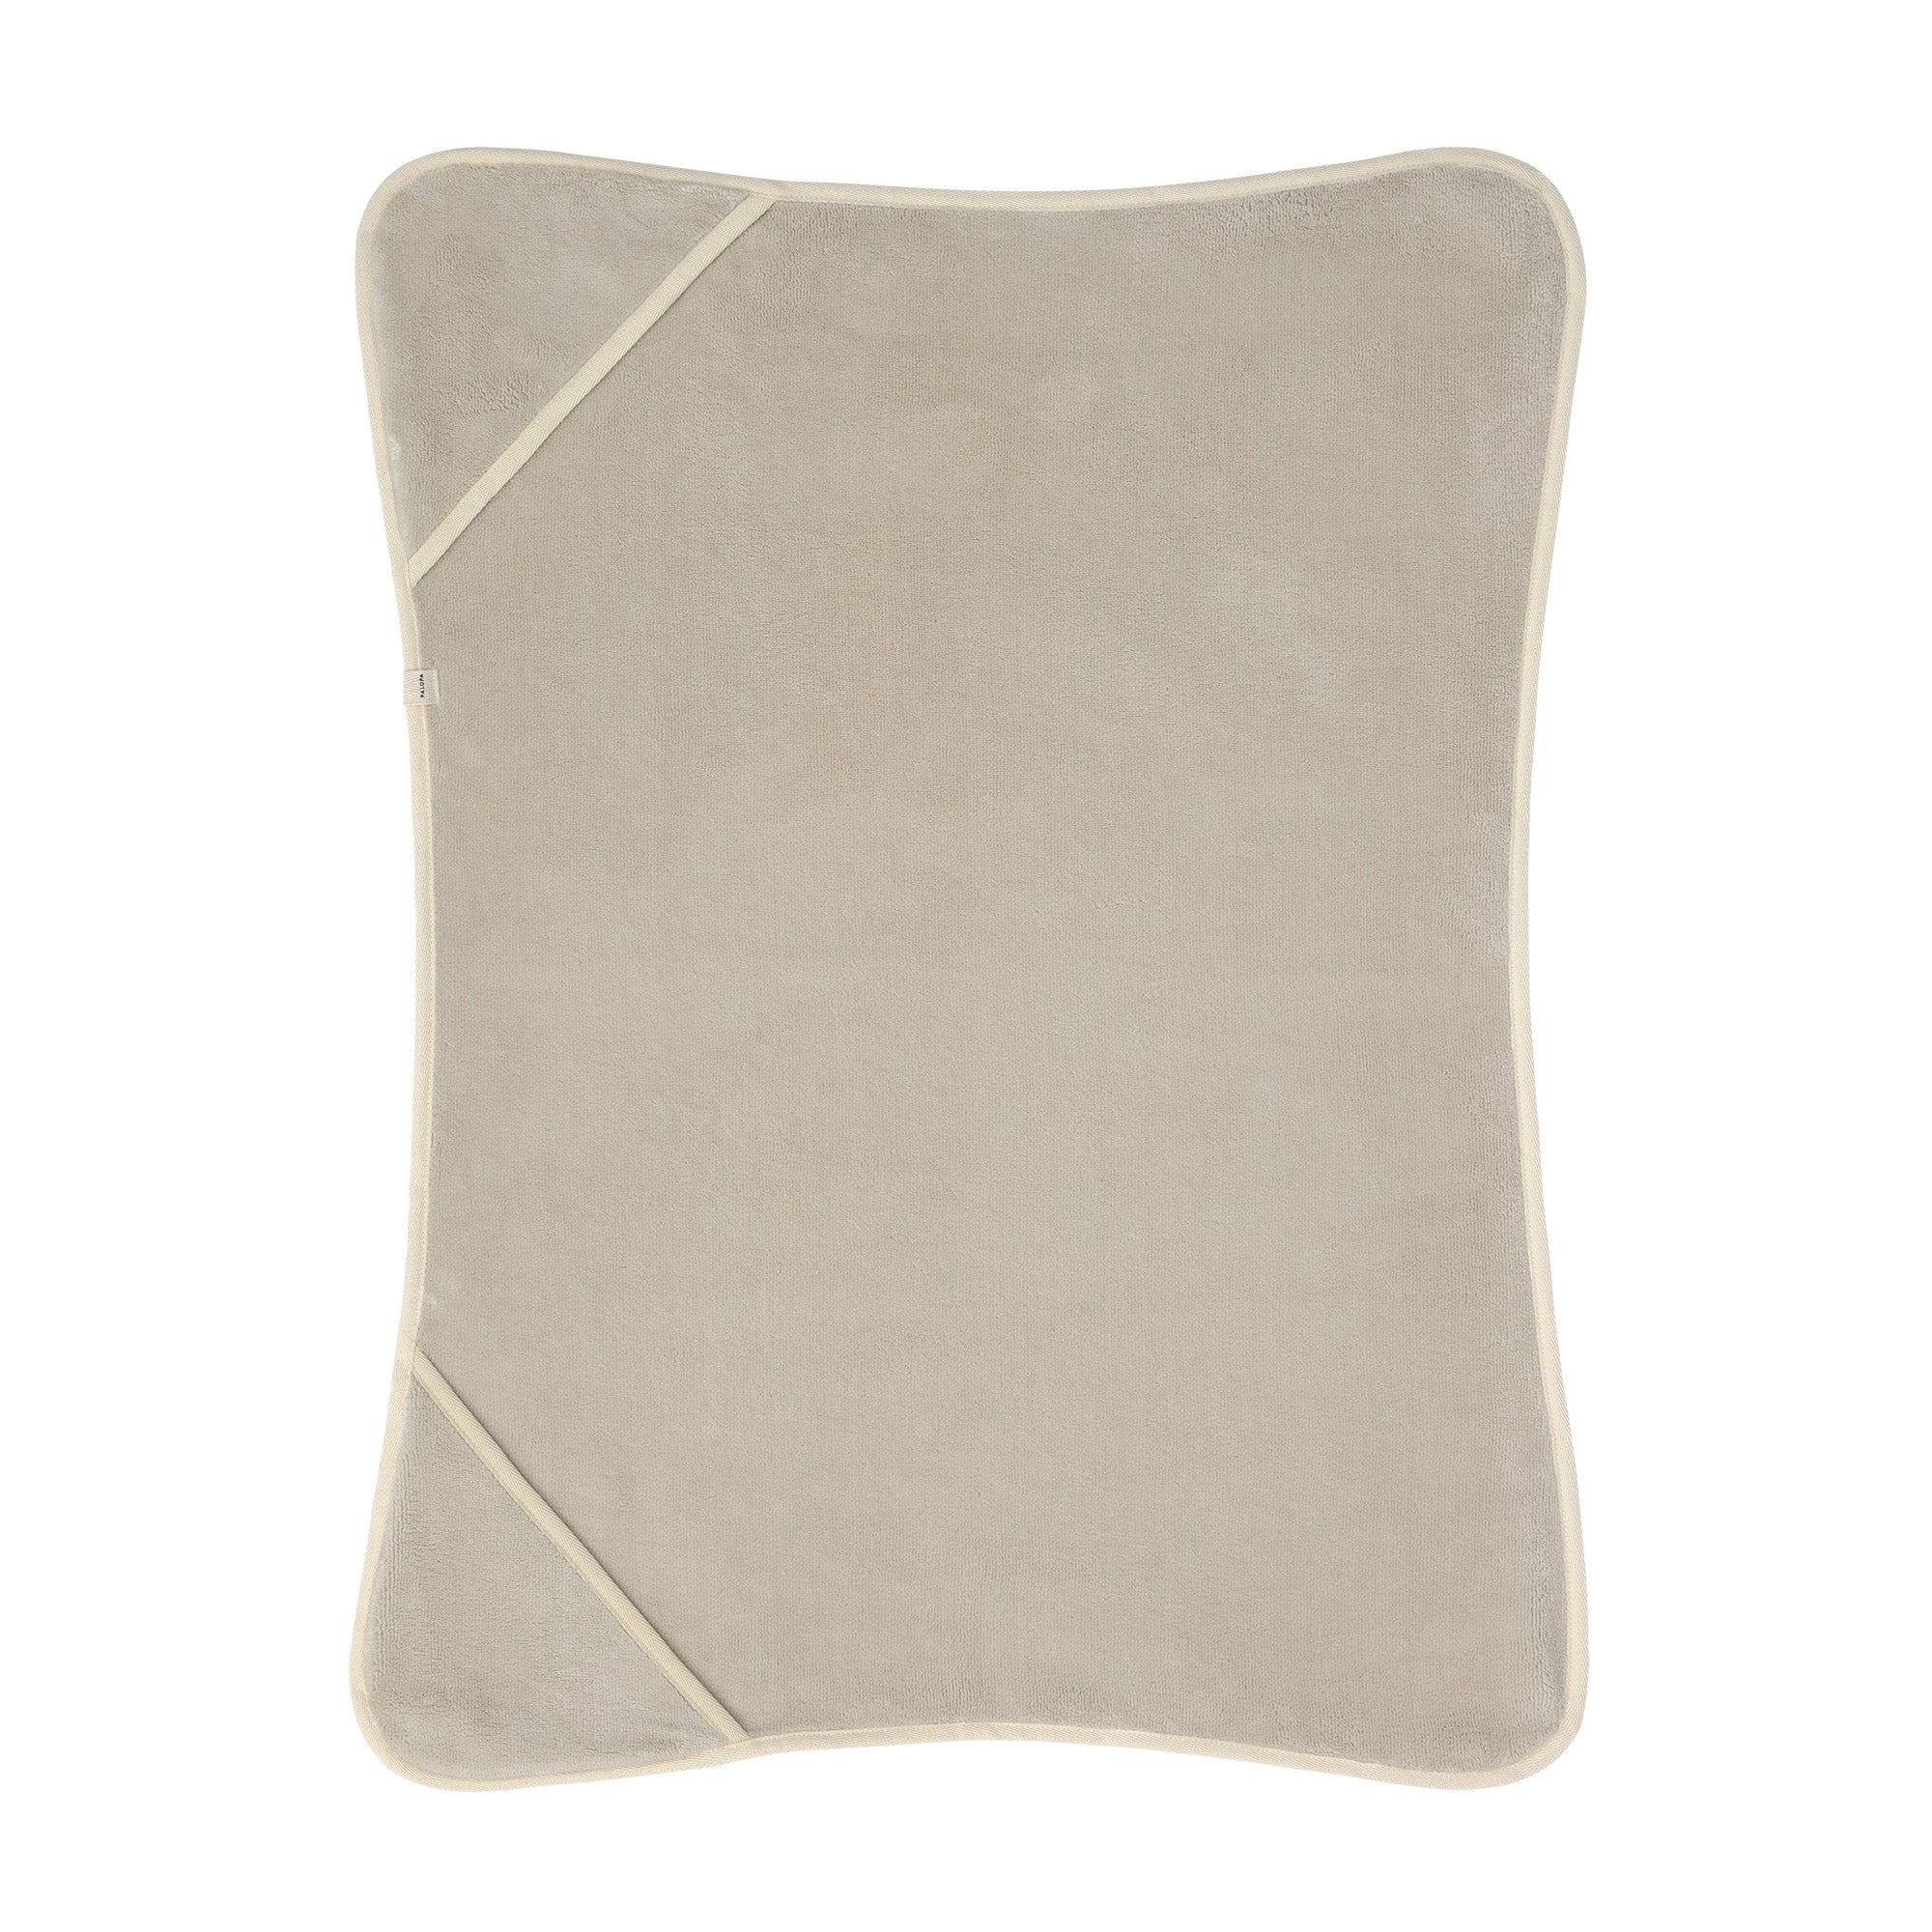 Dog towel - Kosy, beige